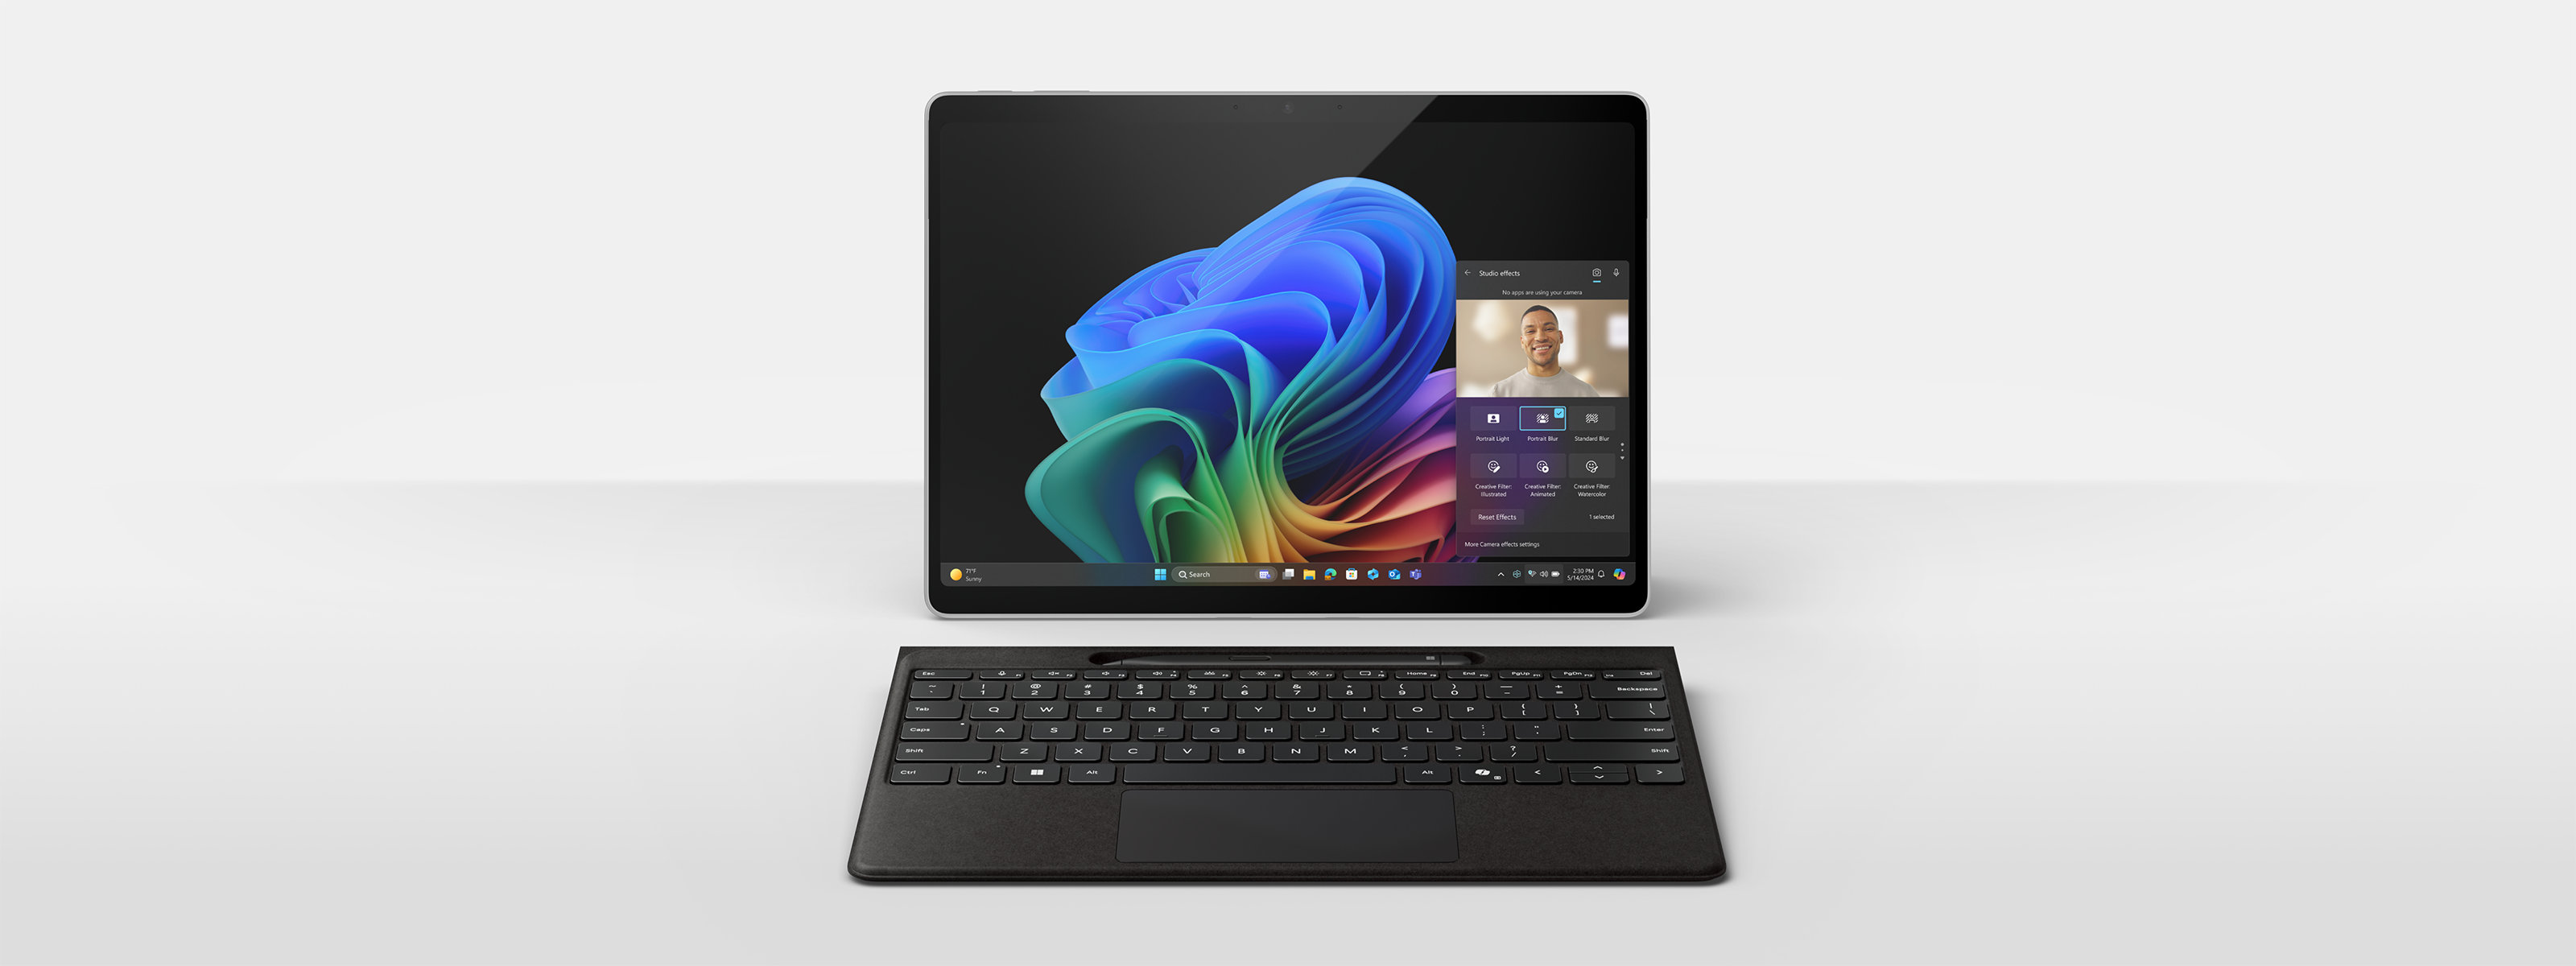 Et bilde av Surface Pro-enheten som bruker kameraet